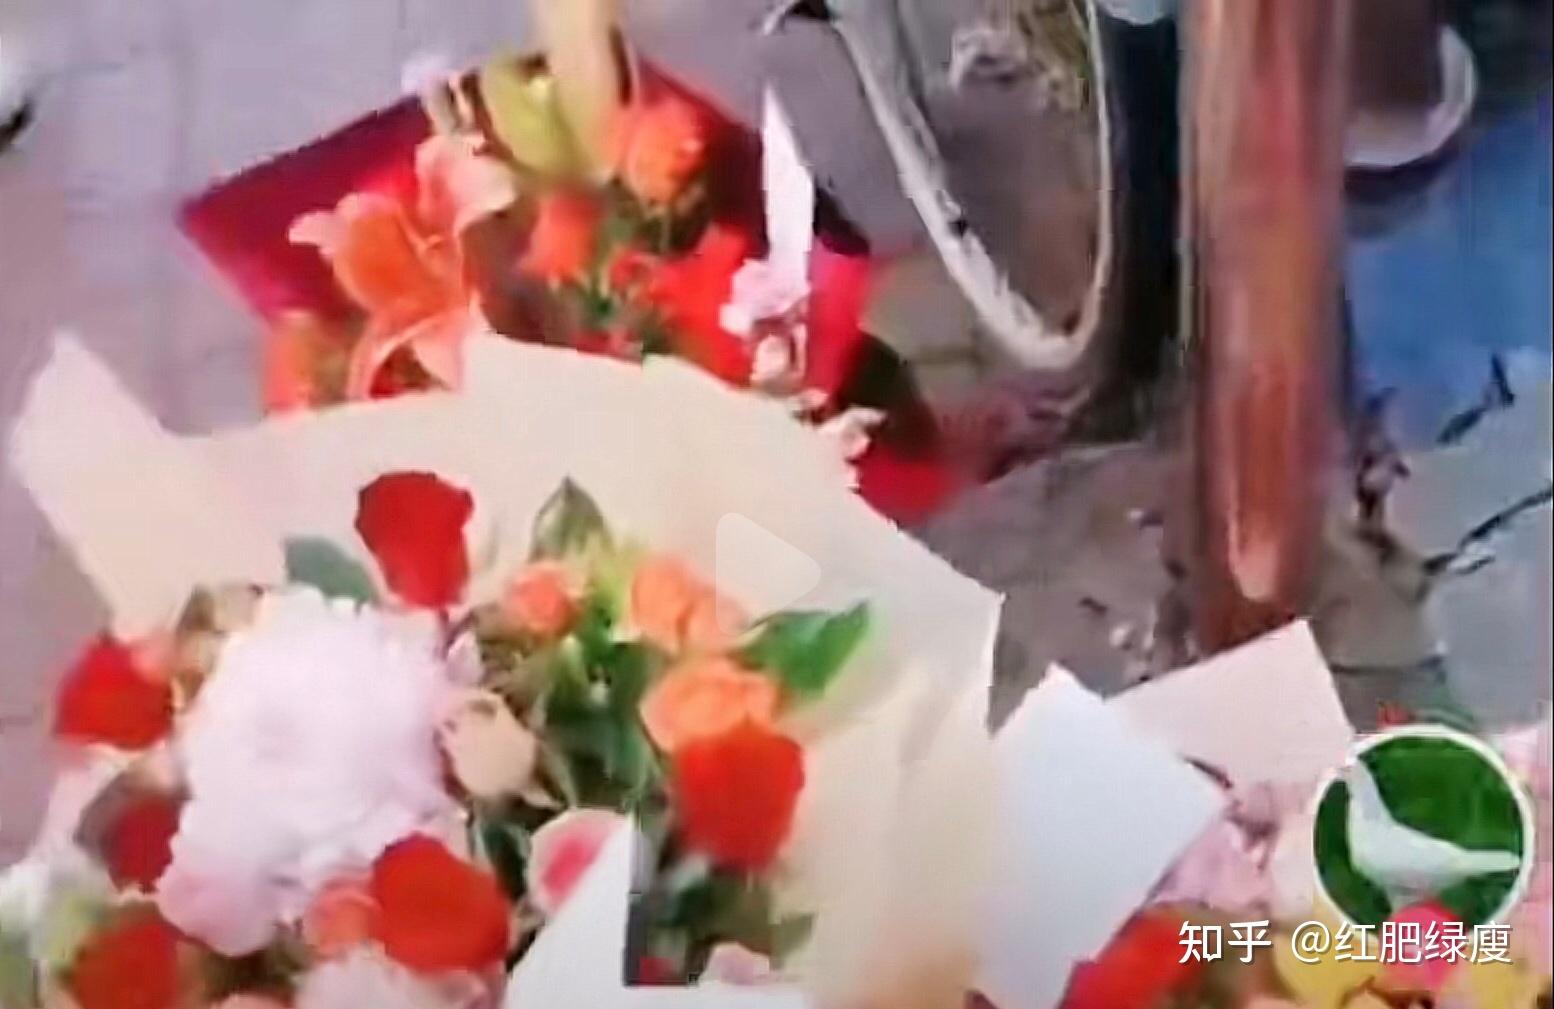 唐山烧烤店打人事件2名主要嫌犯被抓获，受伤女子正接受治疗_凤凰网视频_凤凰网